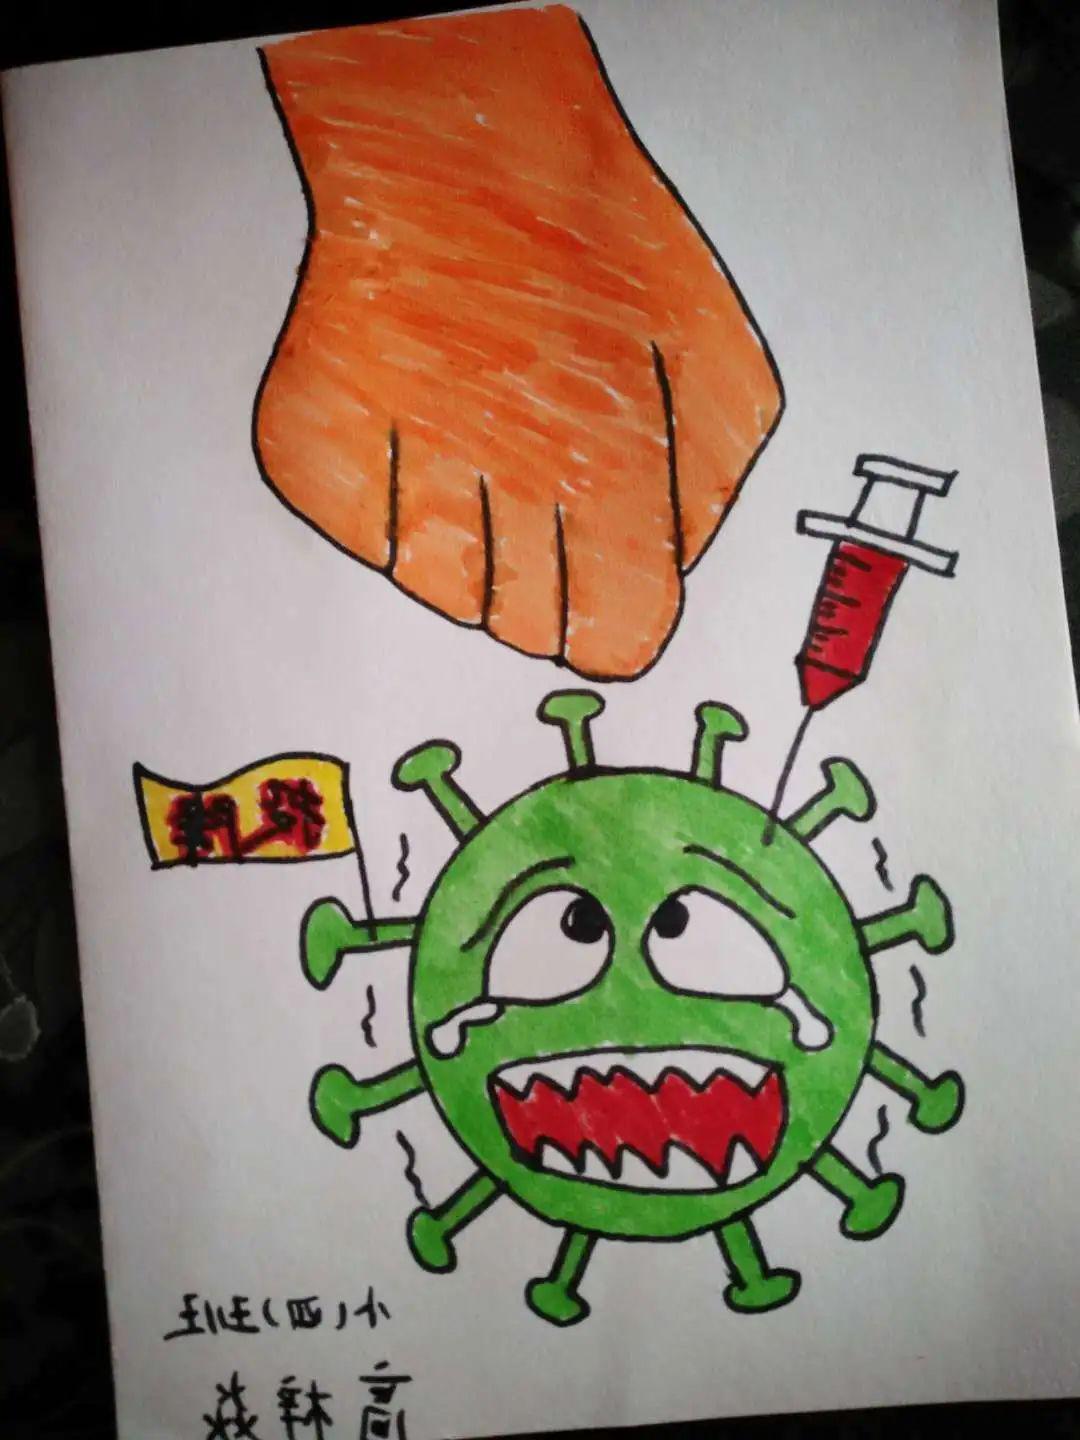 你可能从未发现,绘画是如此有趣高梓炎:《消灭病毒》小五班孩子的作品